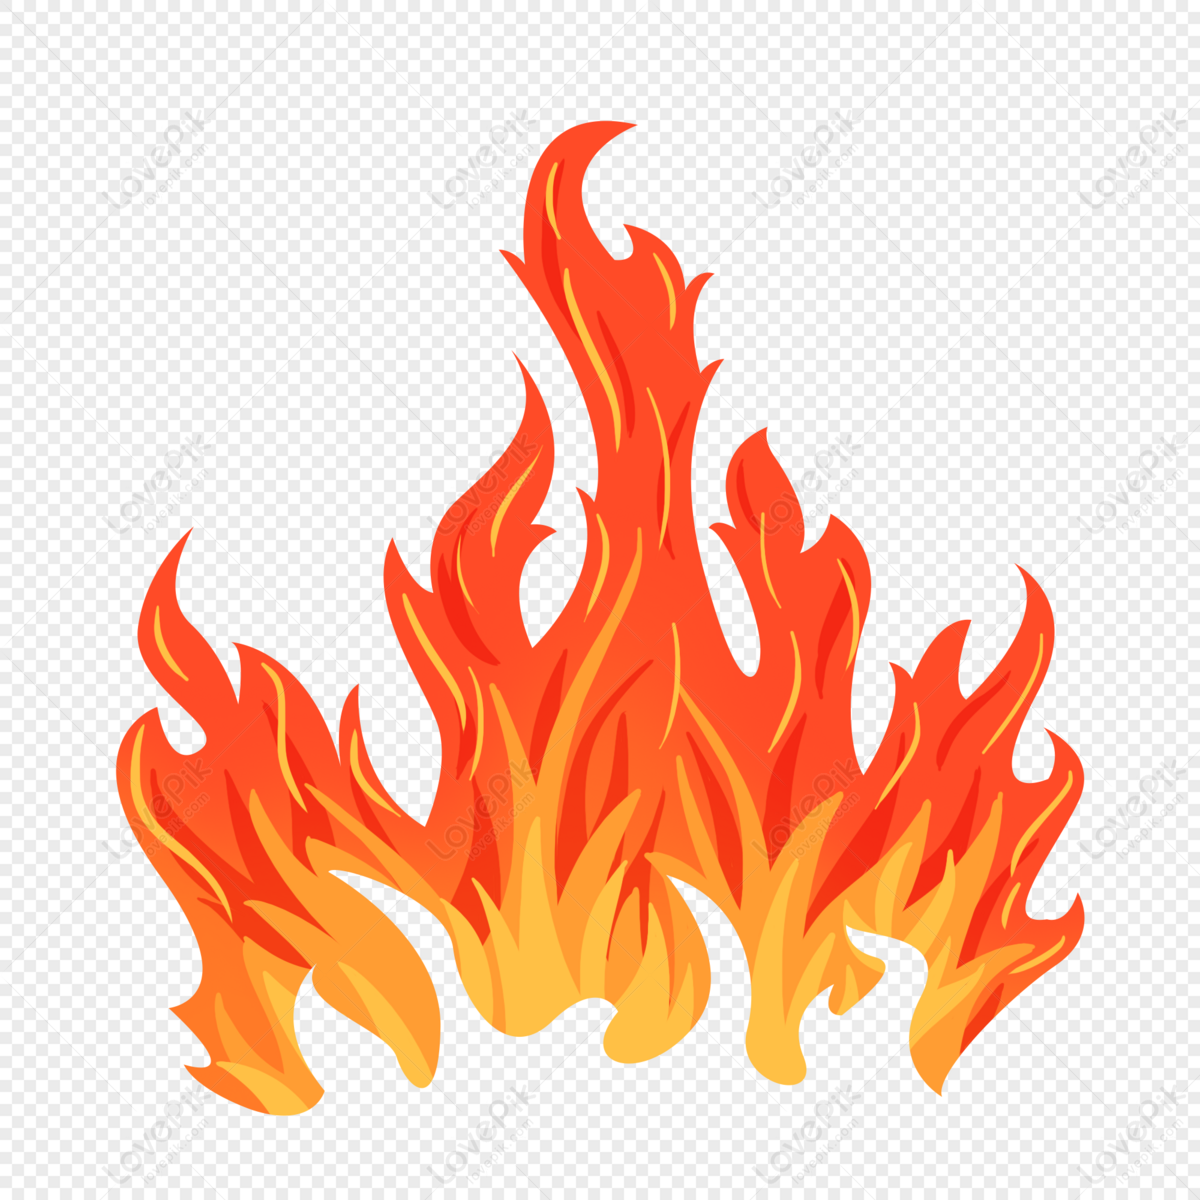 Api Unggun Panas - Gambar gratis di Pixabay - Pixabay